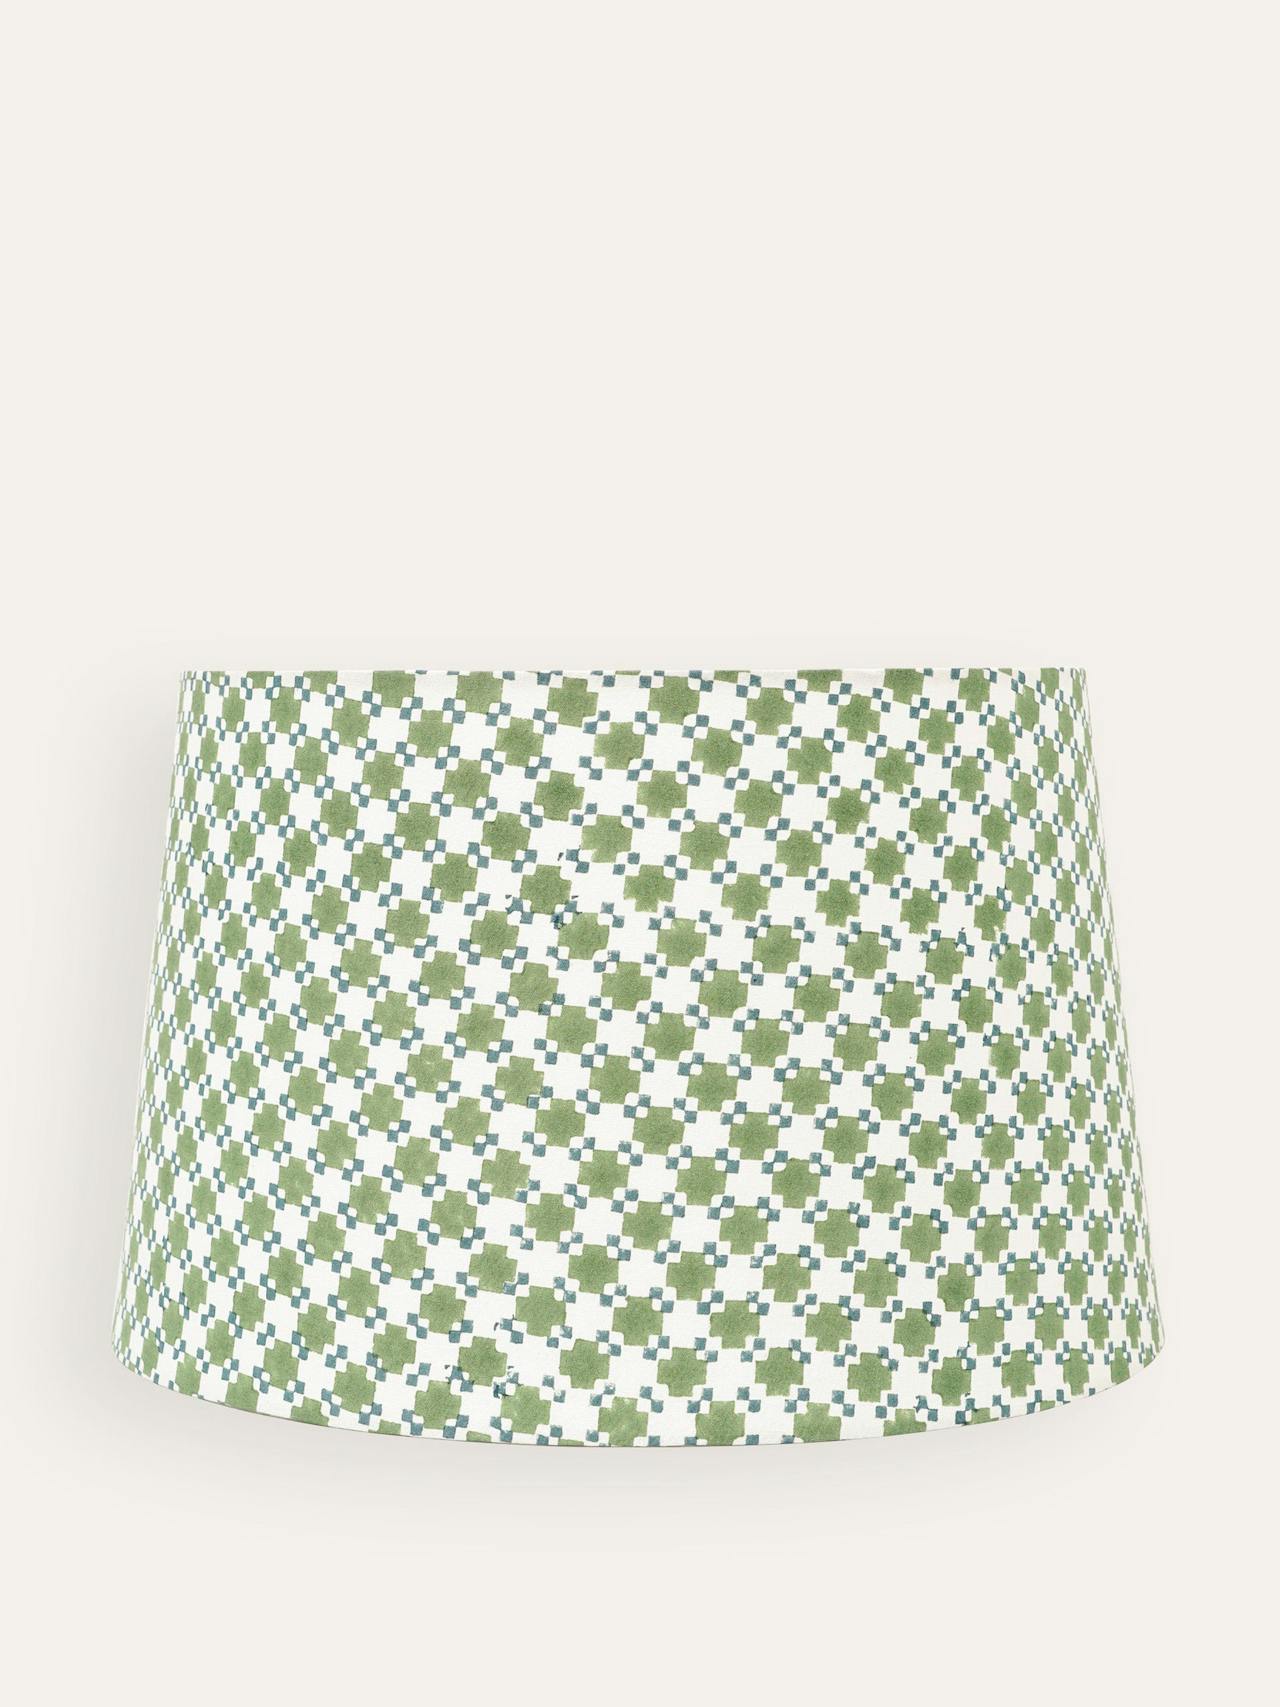 Green Capilla block print lampshade